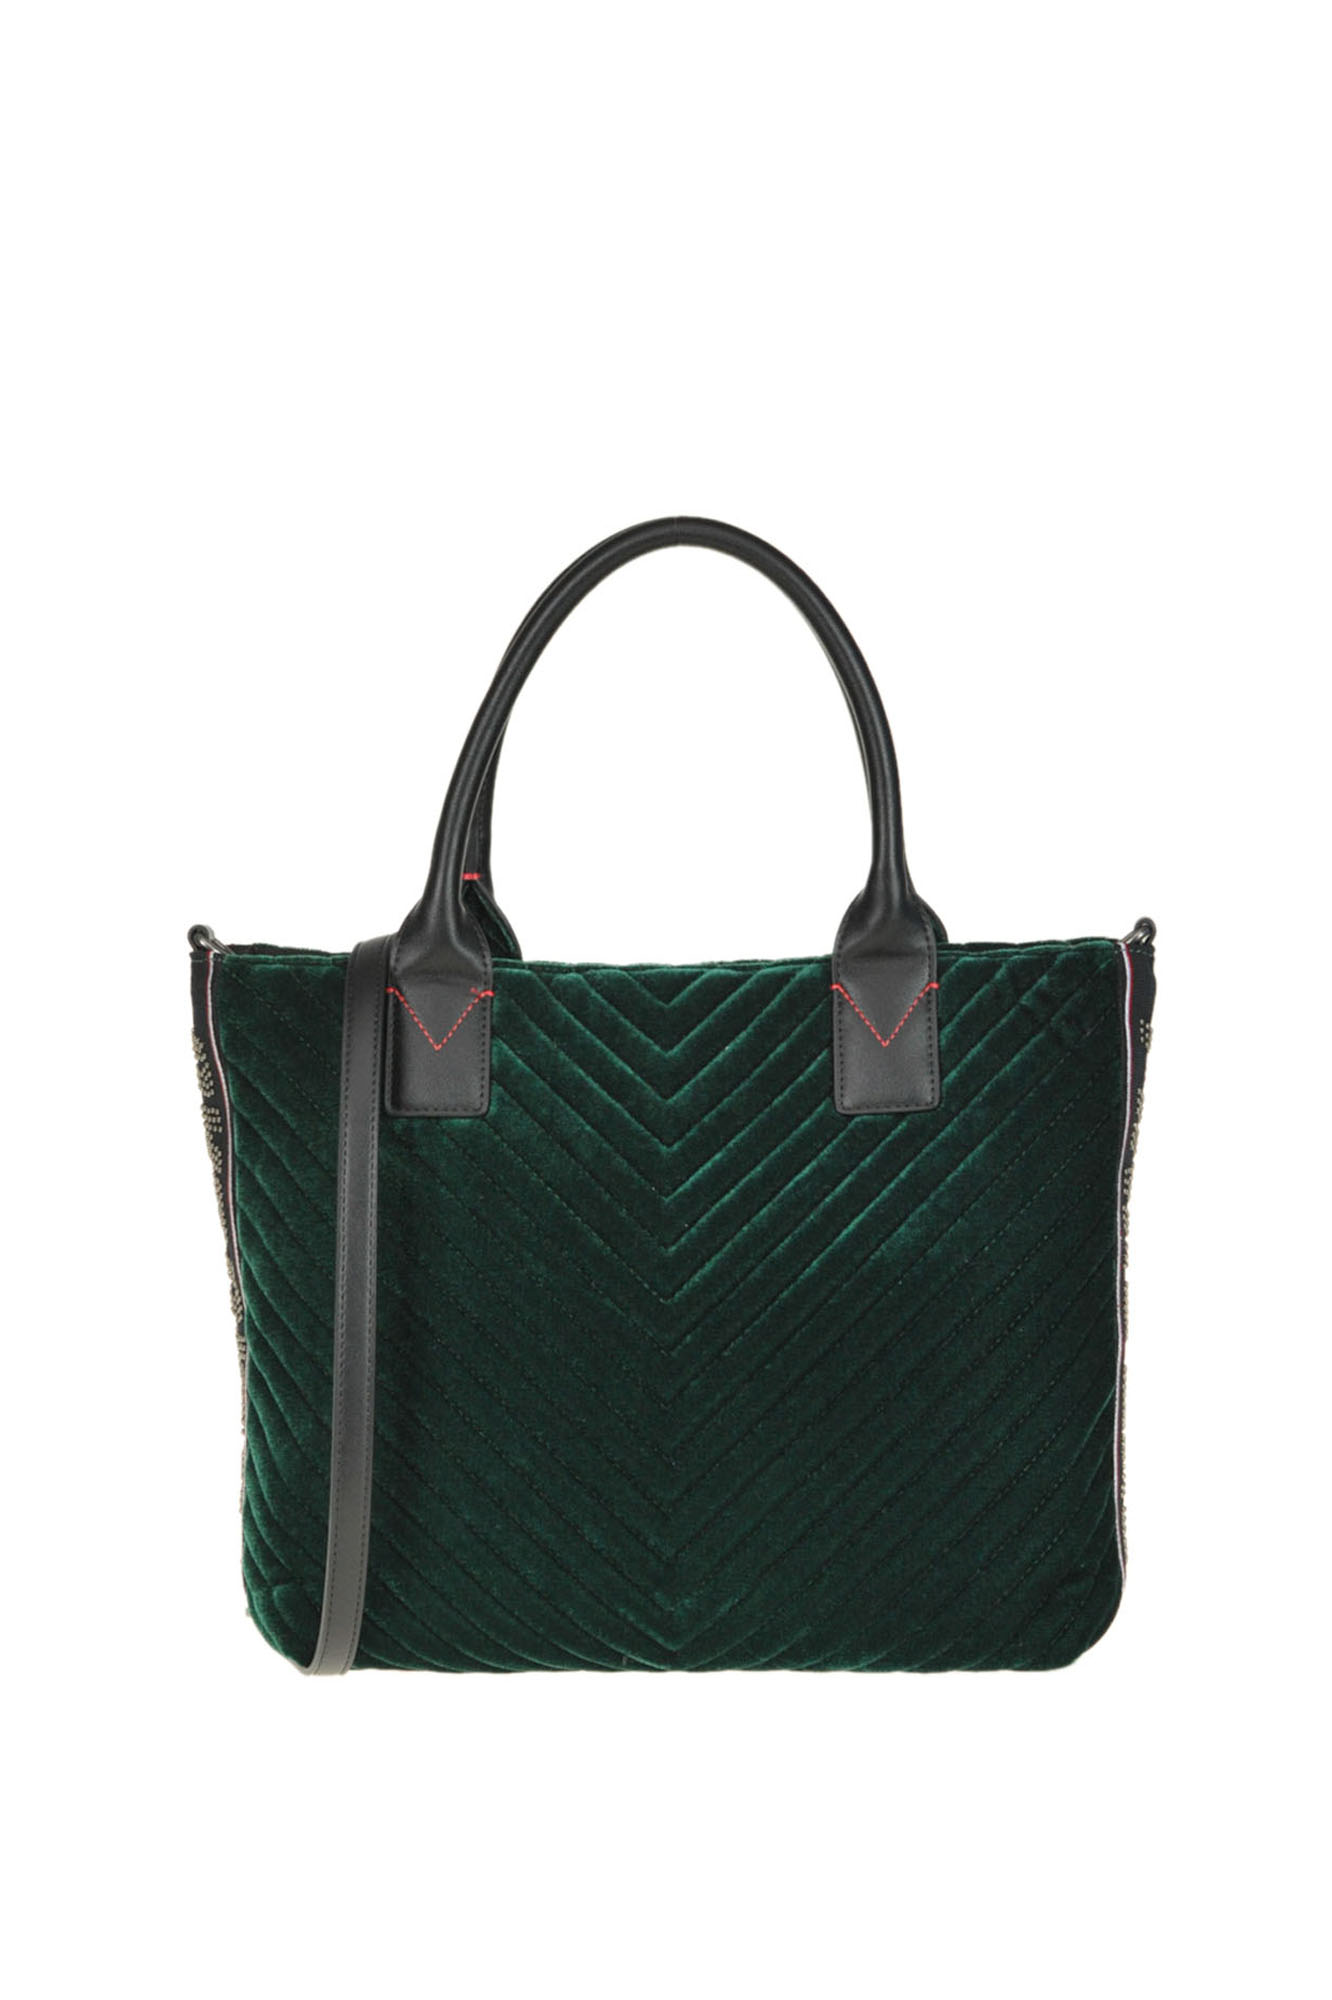 Pinko Adams Quilted Velvet Bag In Dark Green